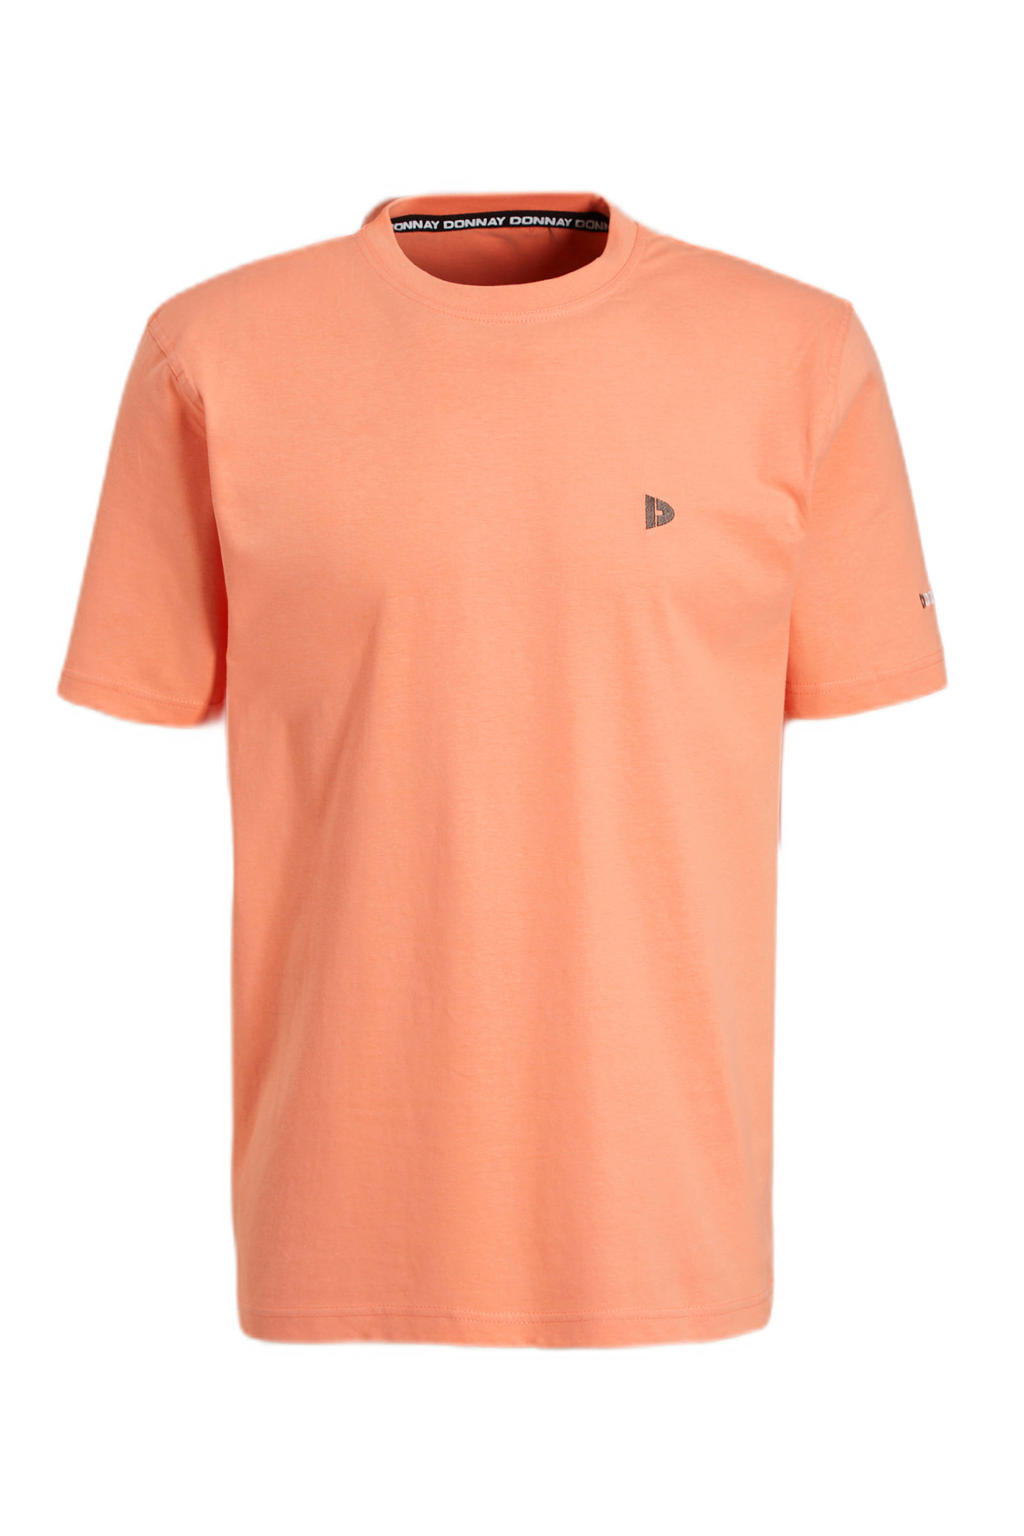 Oranje heren Donnay sport T-shirt van katoen met logo dessin, korte mouwen en ronde hals